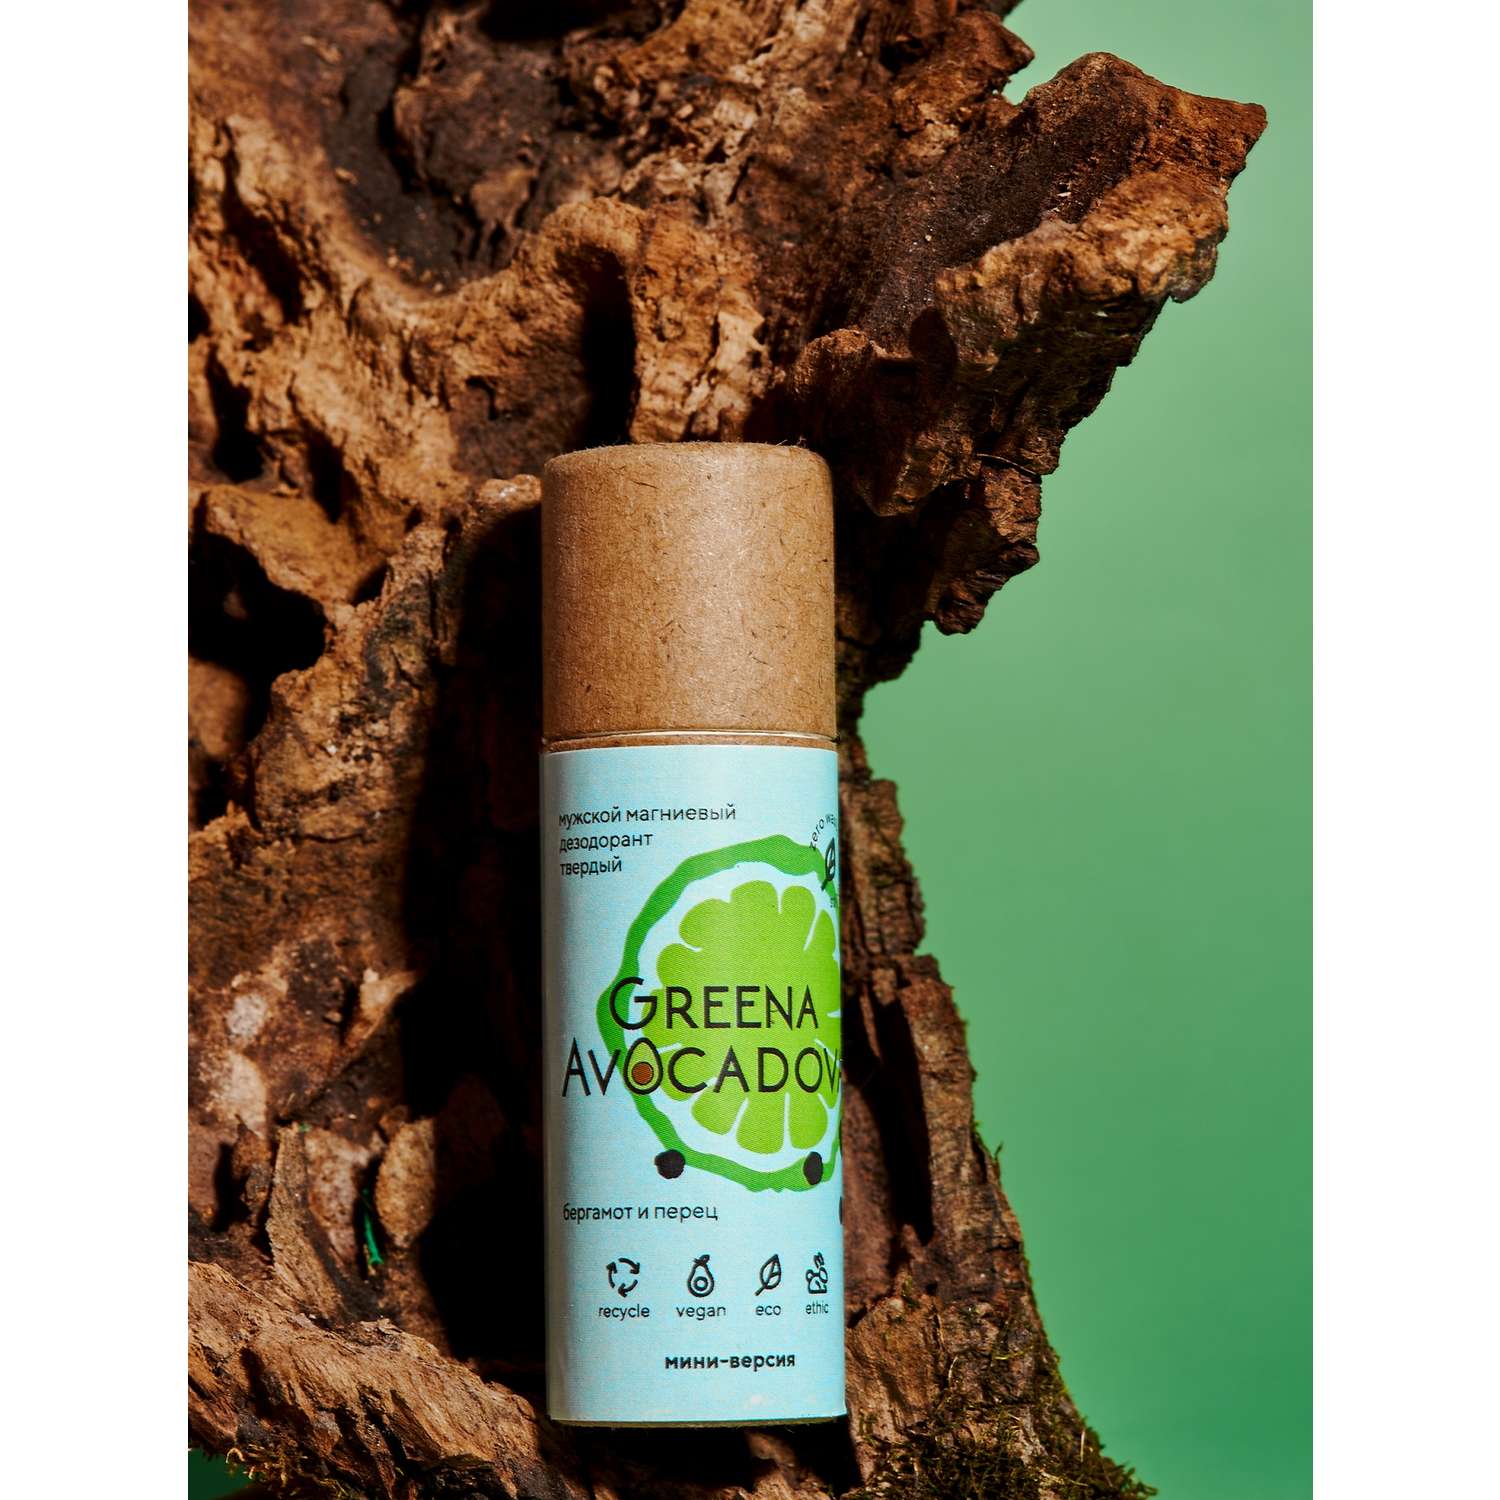 Натуральный твердый дезодорант Greena Avocadova Бергамот и перец мини-версия мужской - фото 8